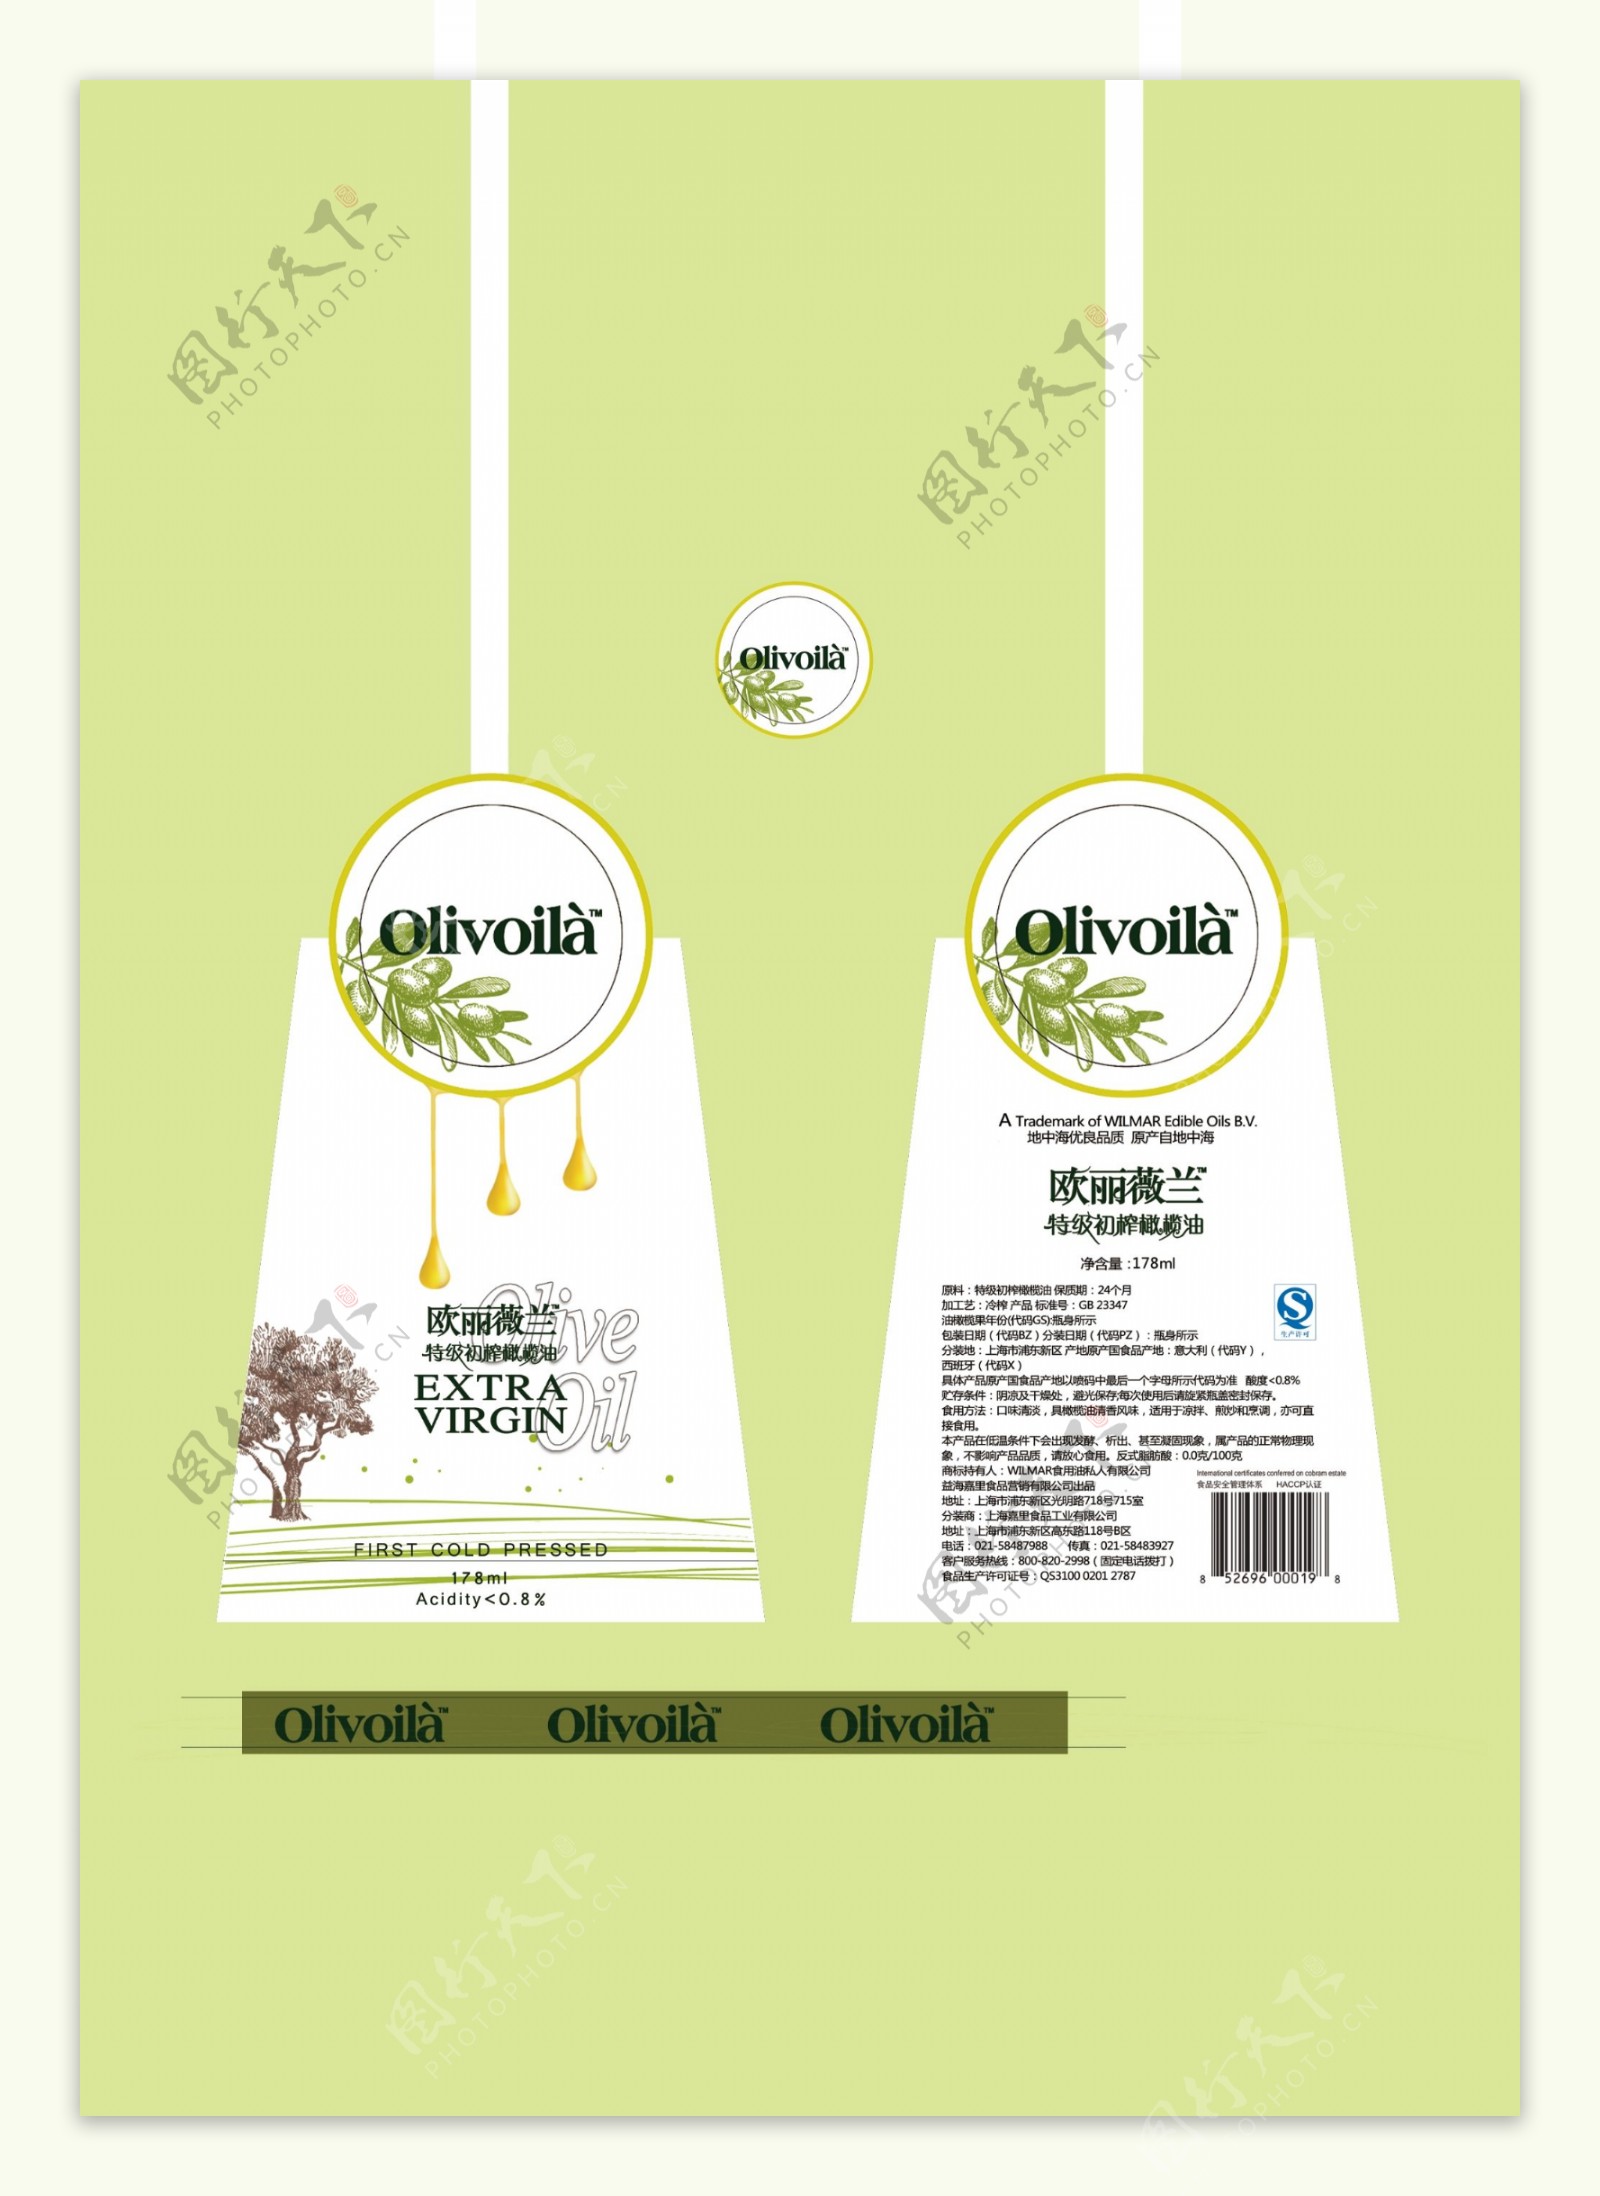 欧丽薇兰橄榄油瓶贴设计